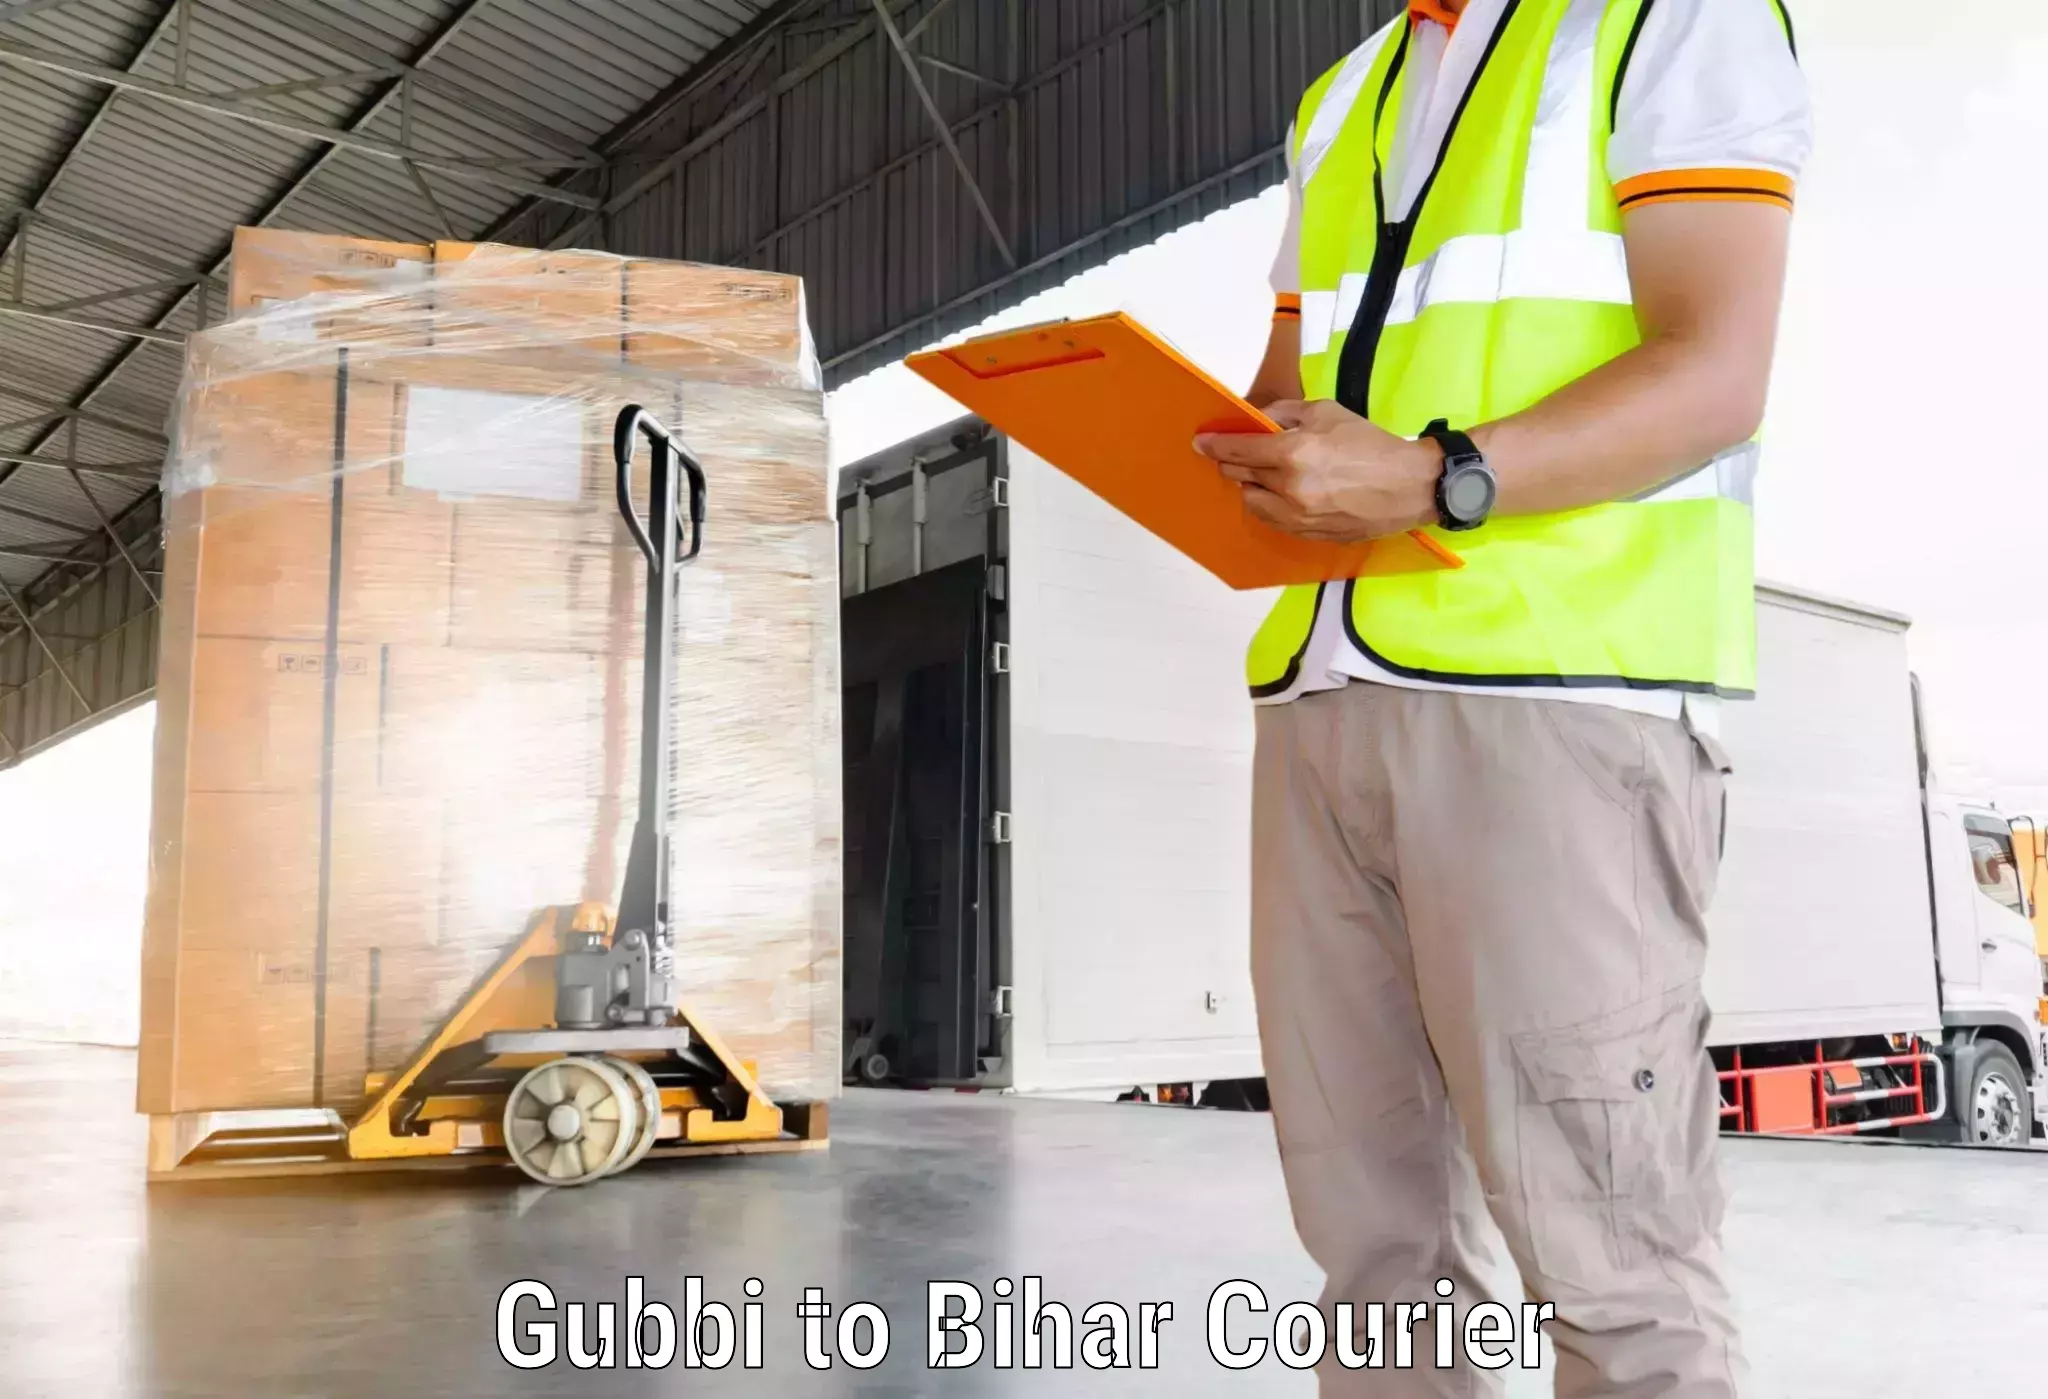 Professional parcel services Gubbi to Bihar